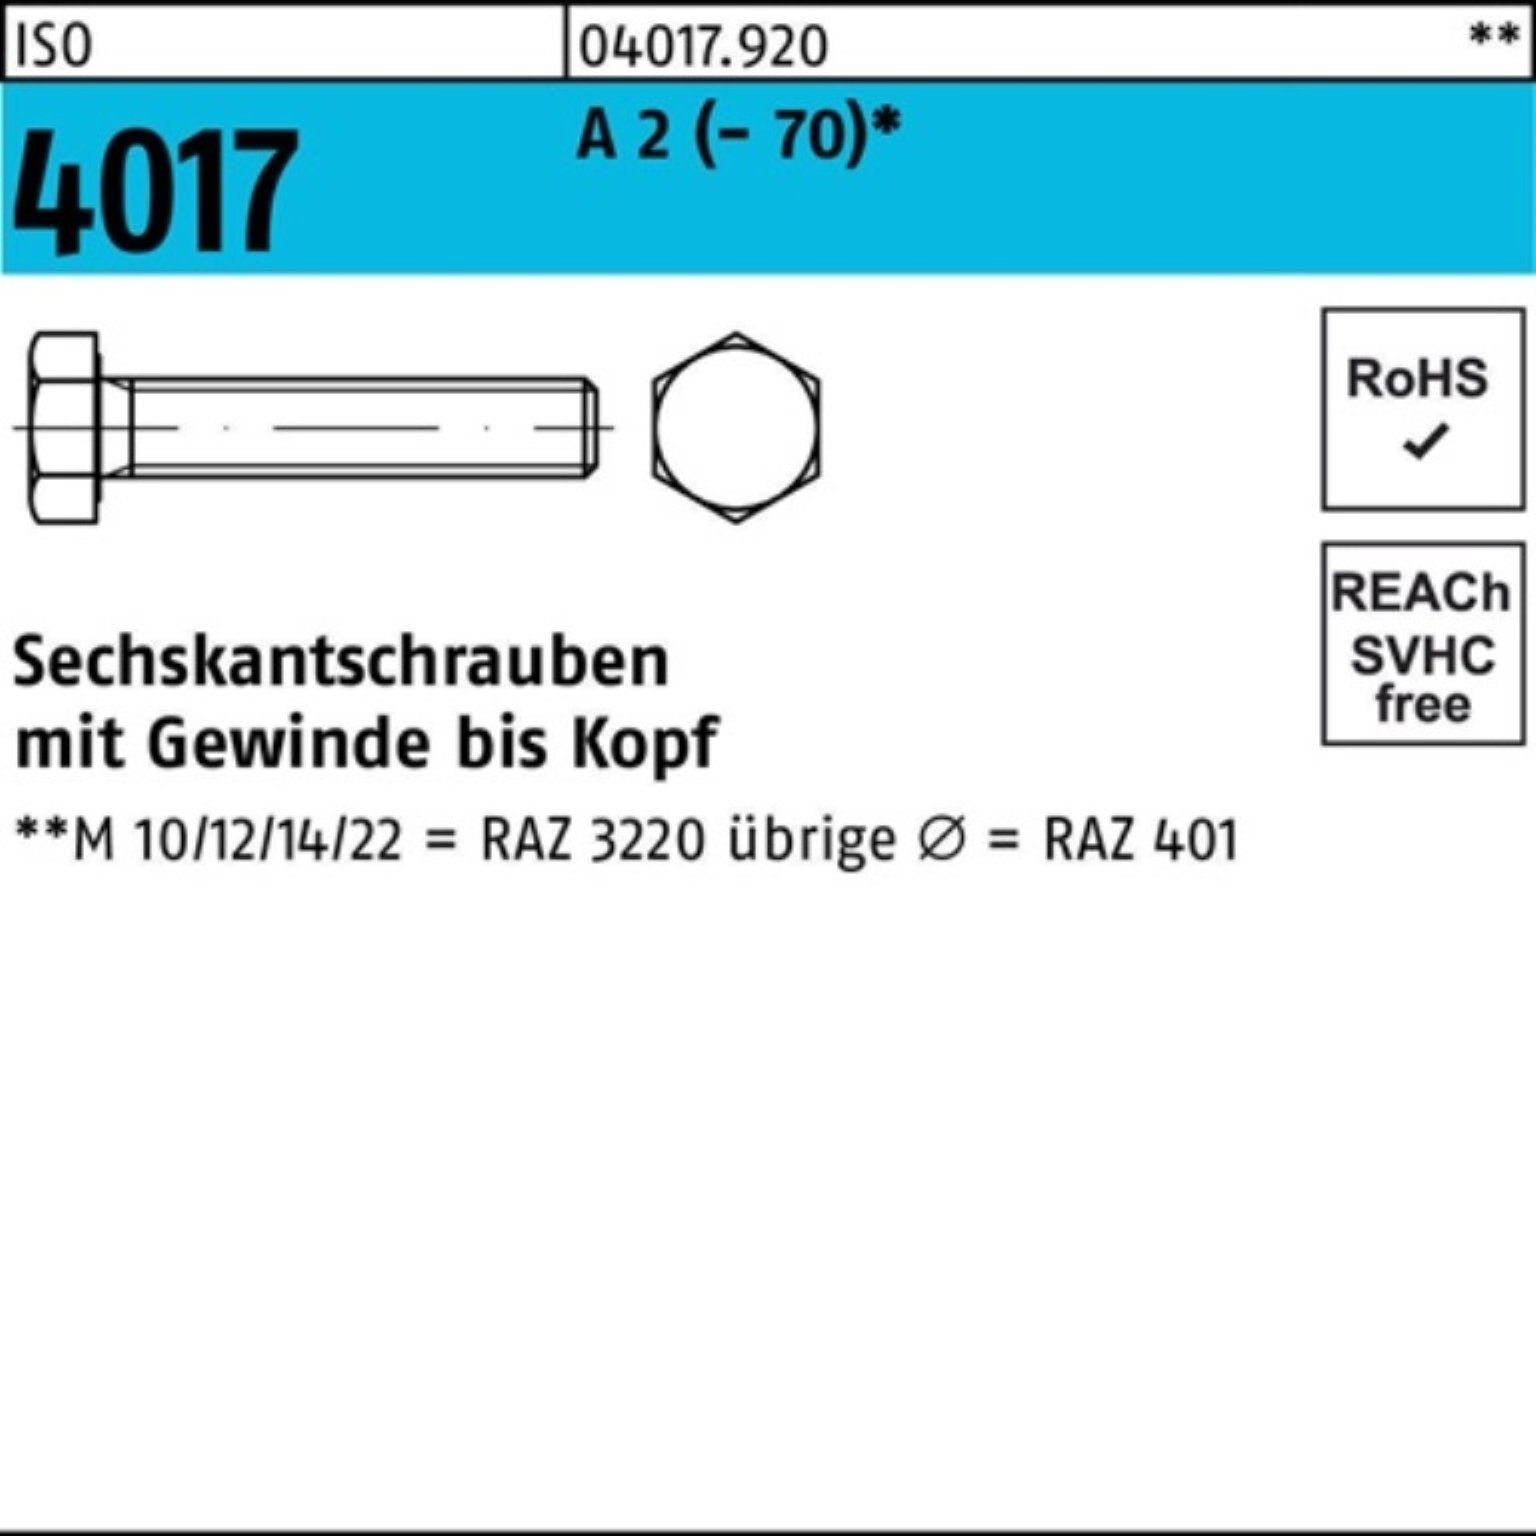 Bufab Sechskantschraube 100er Pack Sechskantschraube ISO 4017 VG M18x 140 A 2 (70) 1 Stück | Schrauben